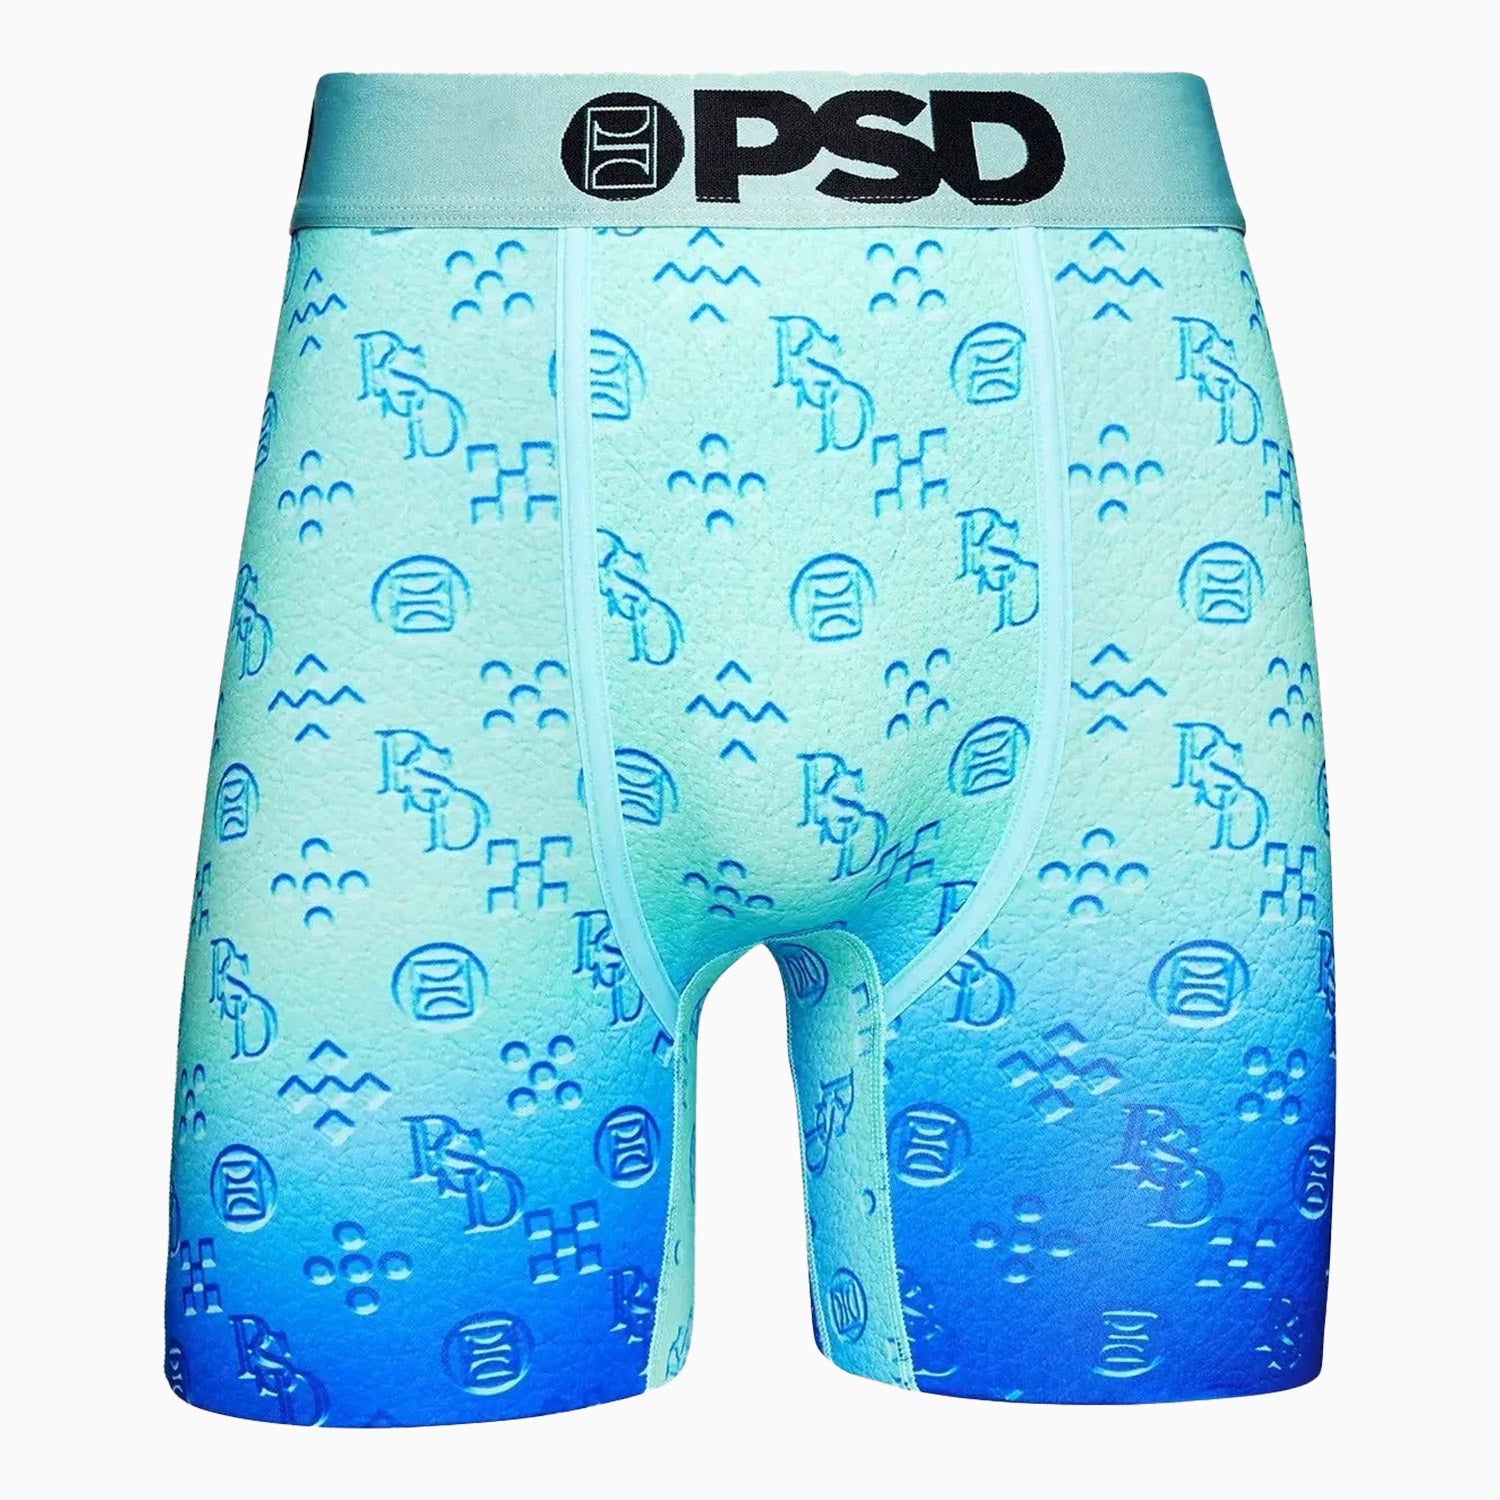 PSD underwear  Men and underwear